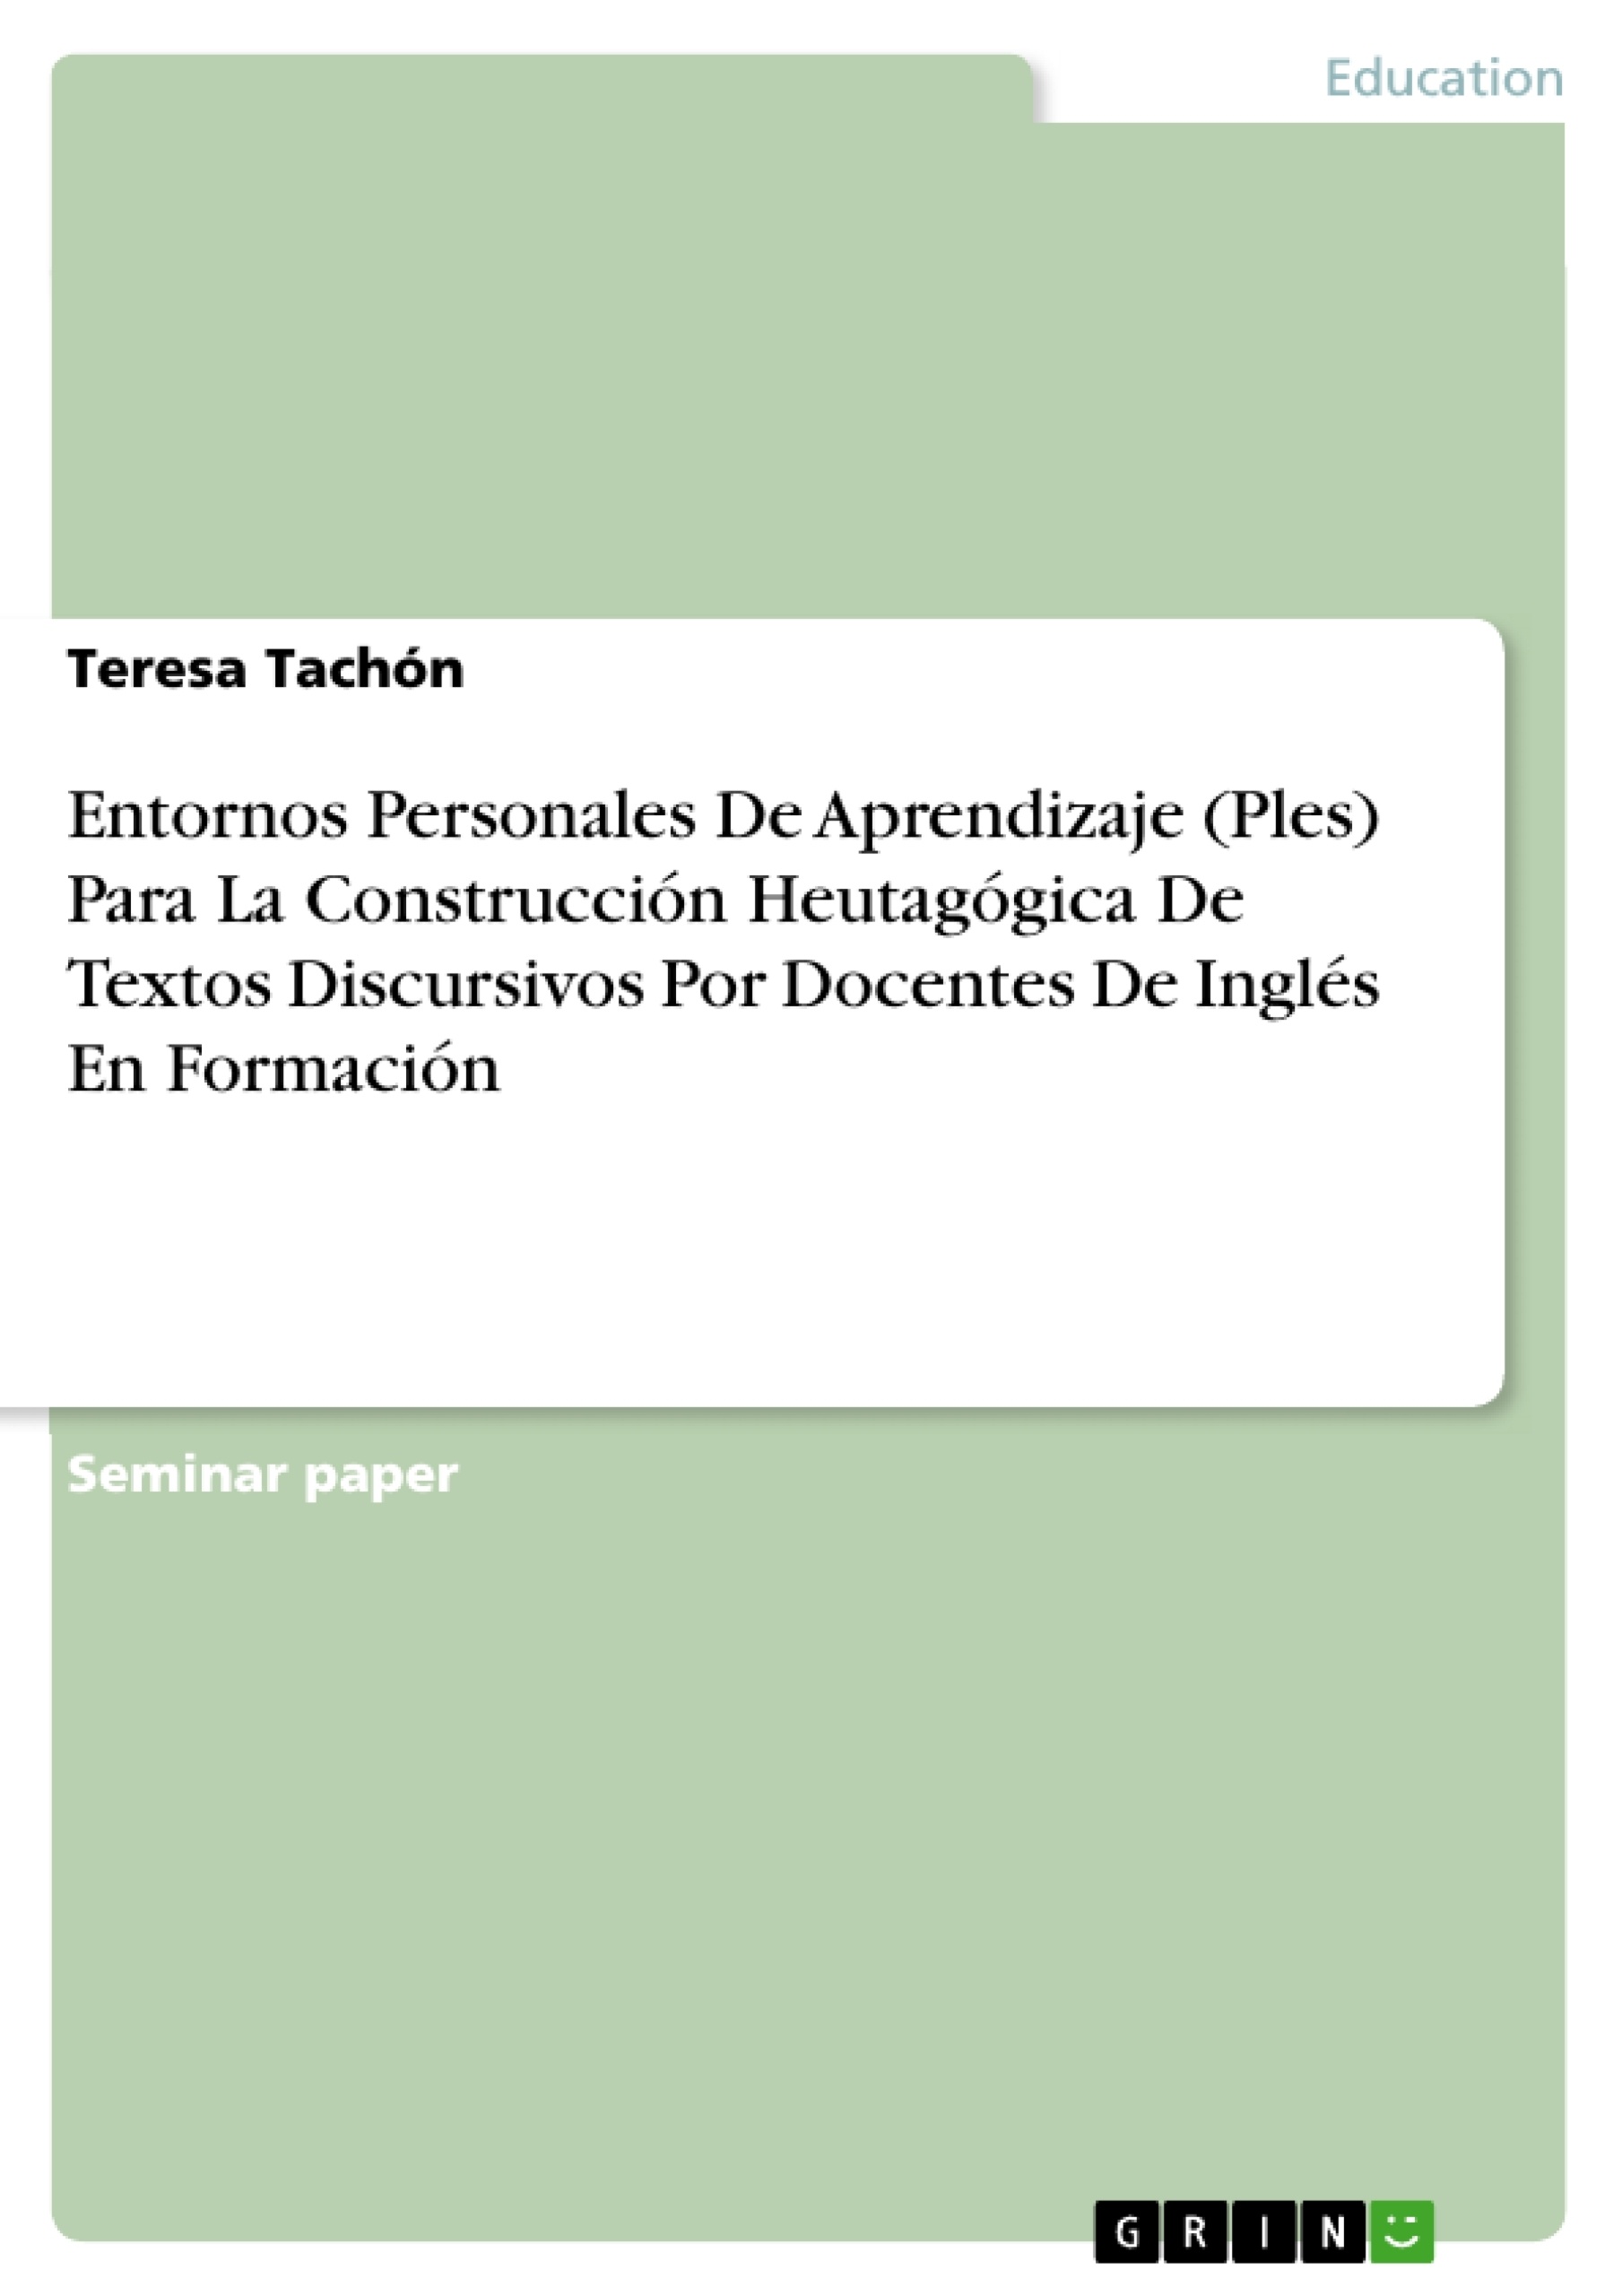 Título: Entornos Personales De Aprendizaje (Ples) Para La Construcción Heutagógica De Textos Discursivos Por Docentes De Inglés En Formación